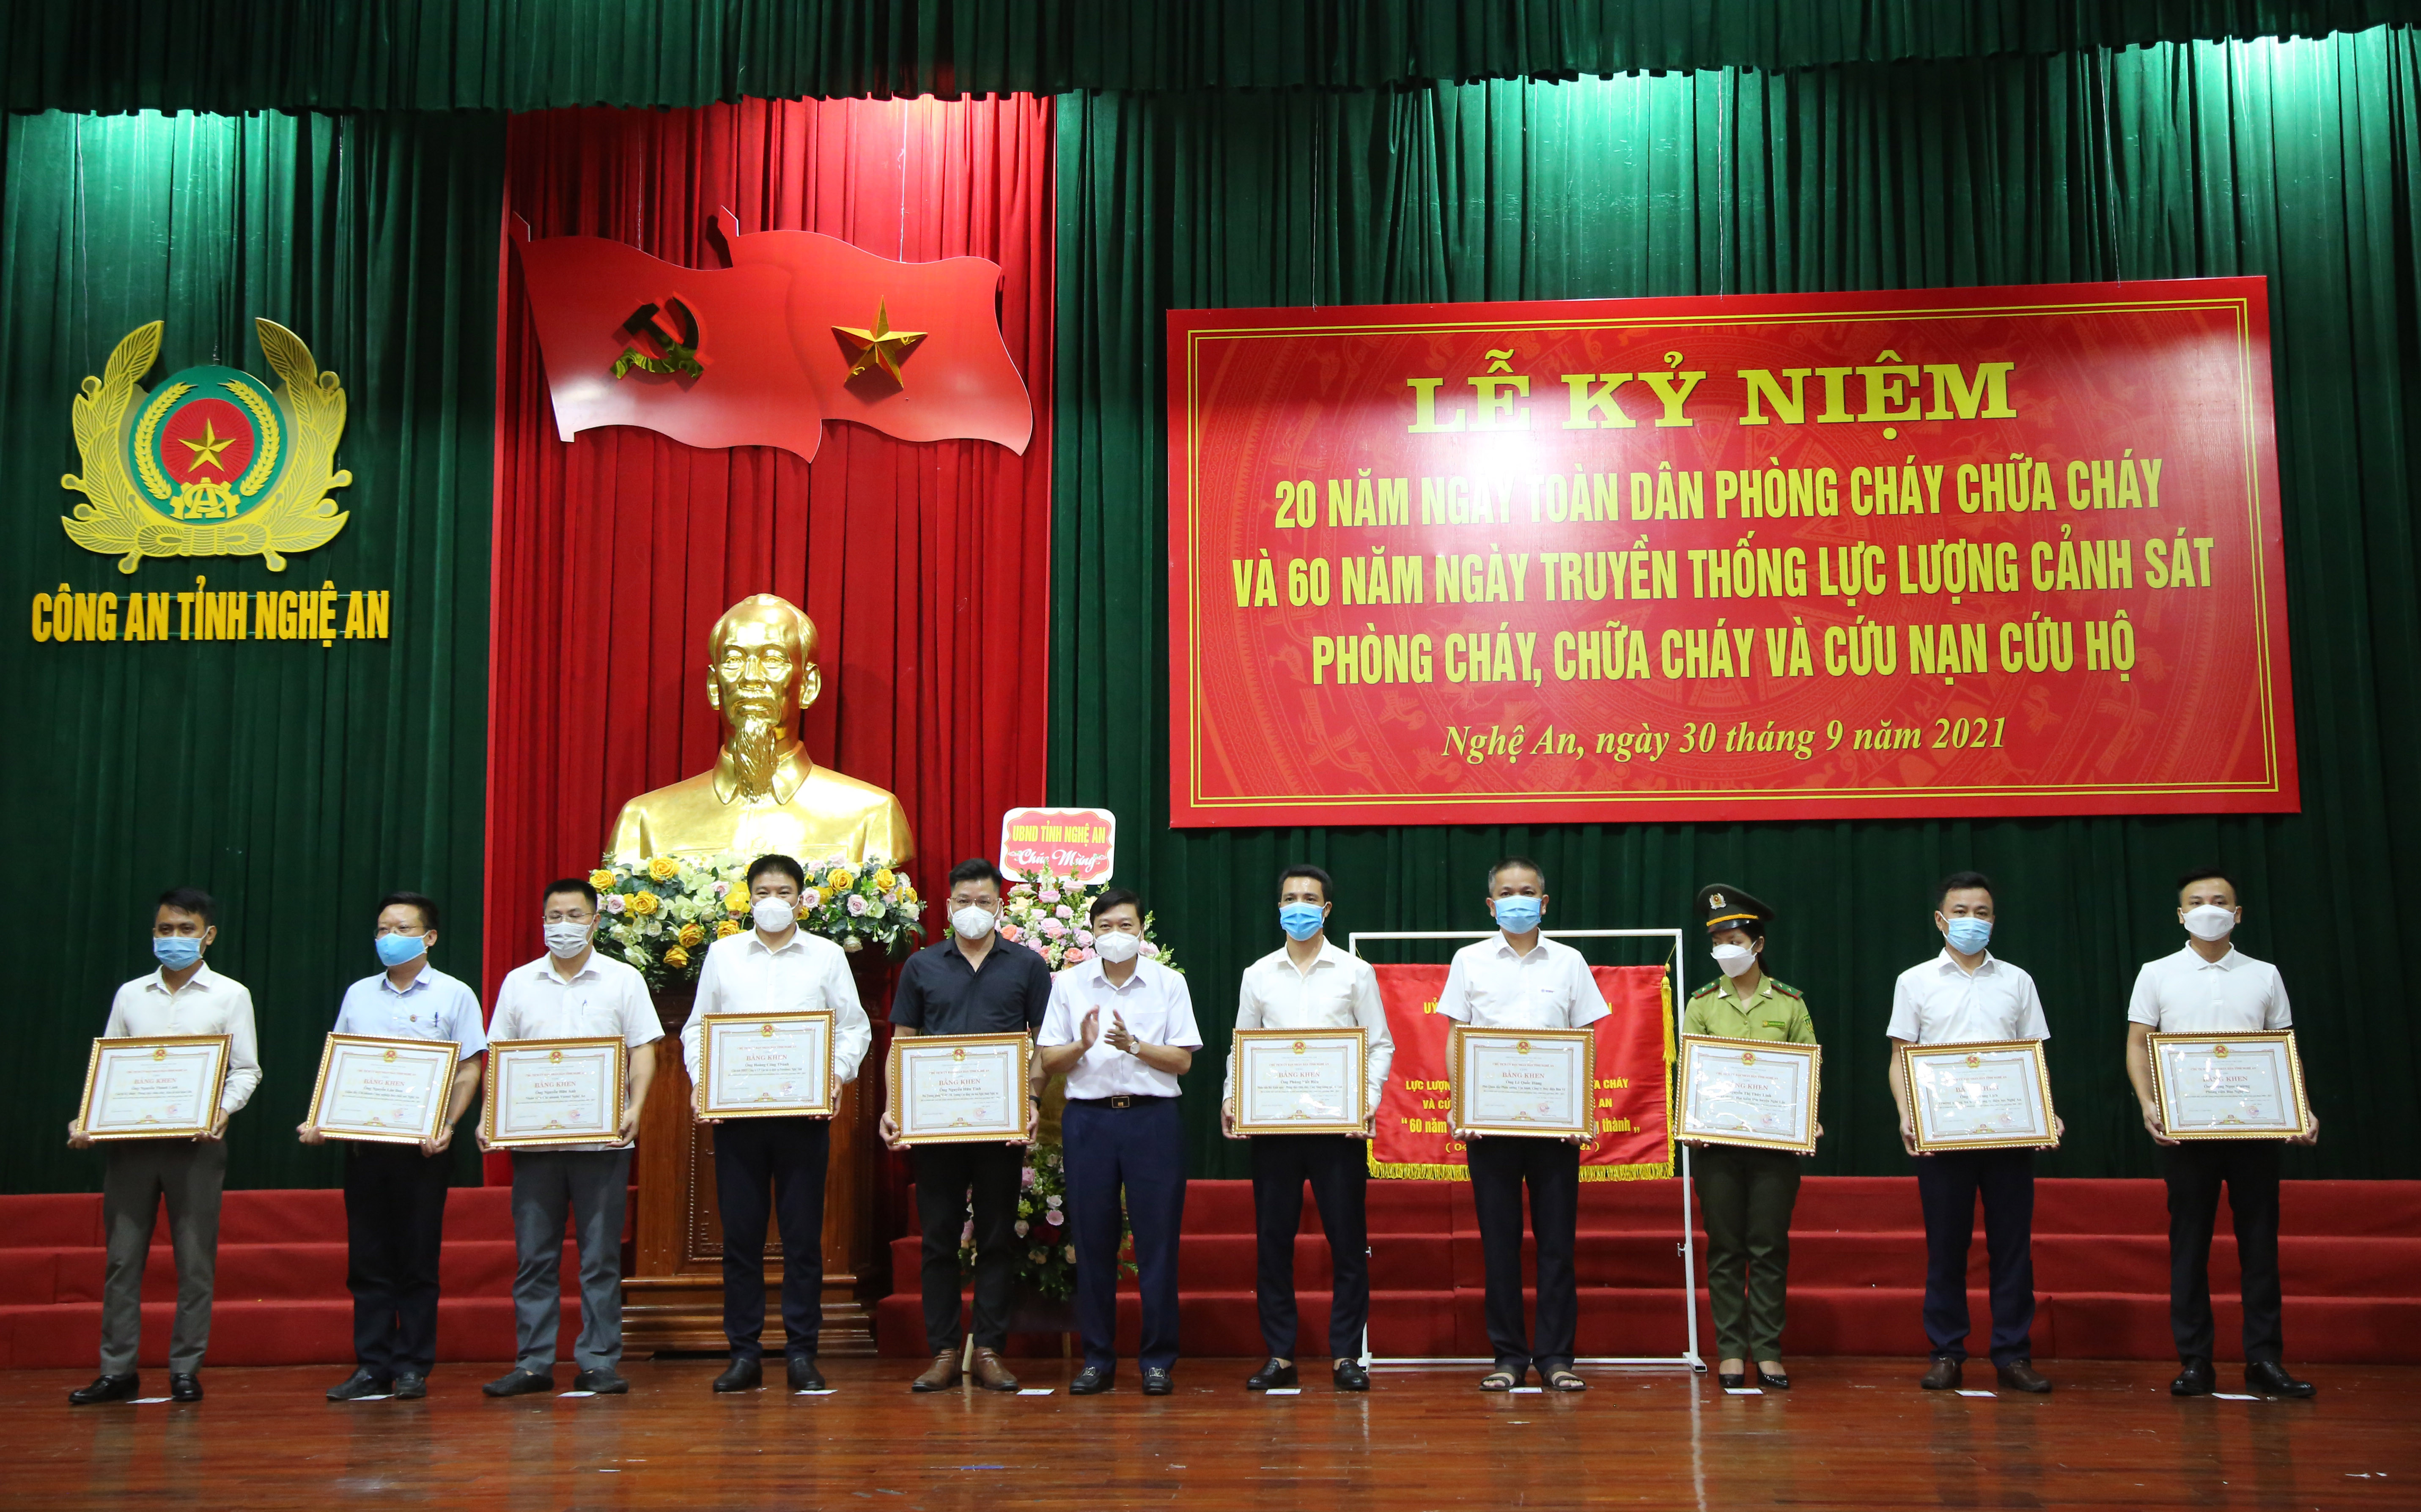 Đồng chí Lê Hồng Vinh, Phó Chủ tịch thường trực UBND tỉnh trao tặng bằng khen cho các cá nhân có thành tích xuất sắc. Ảnh: Đức Vũ